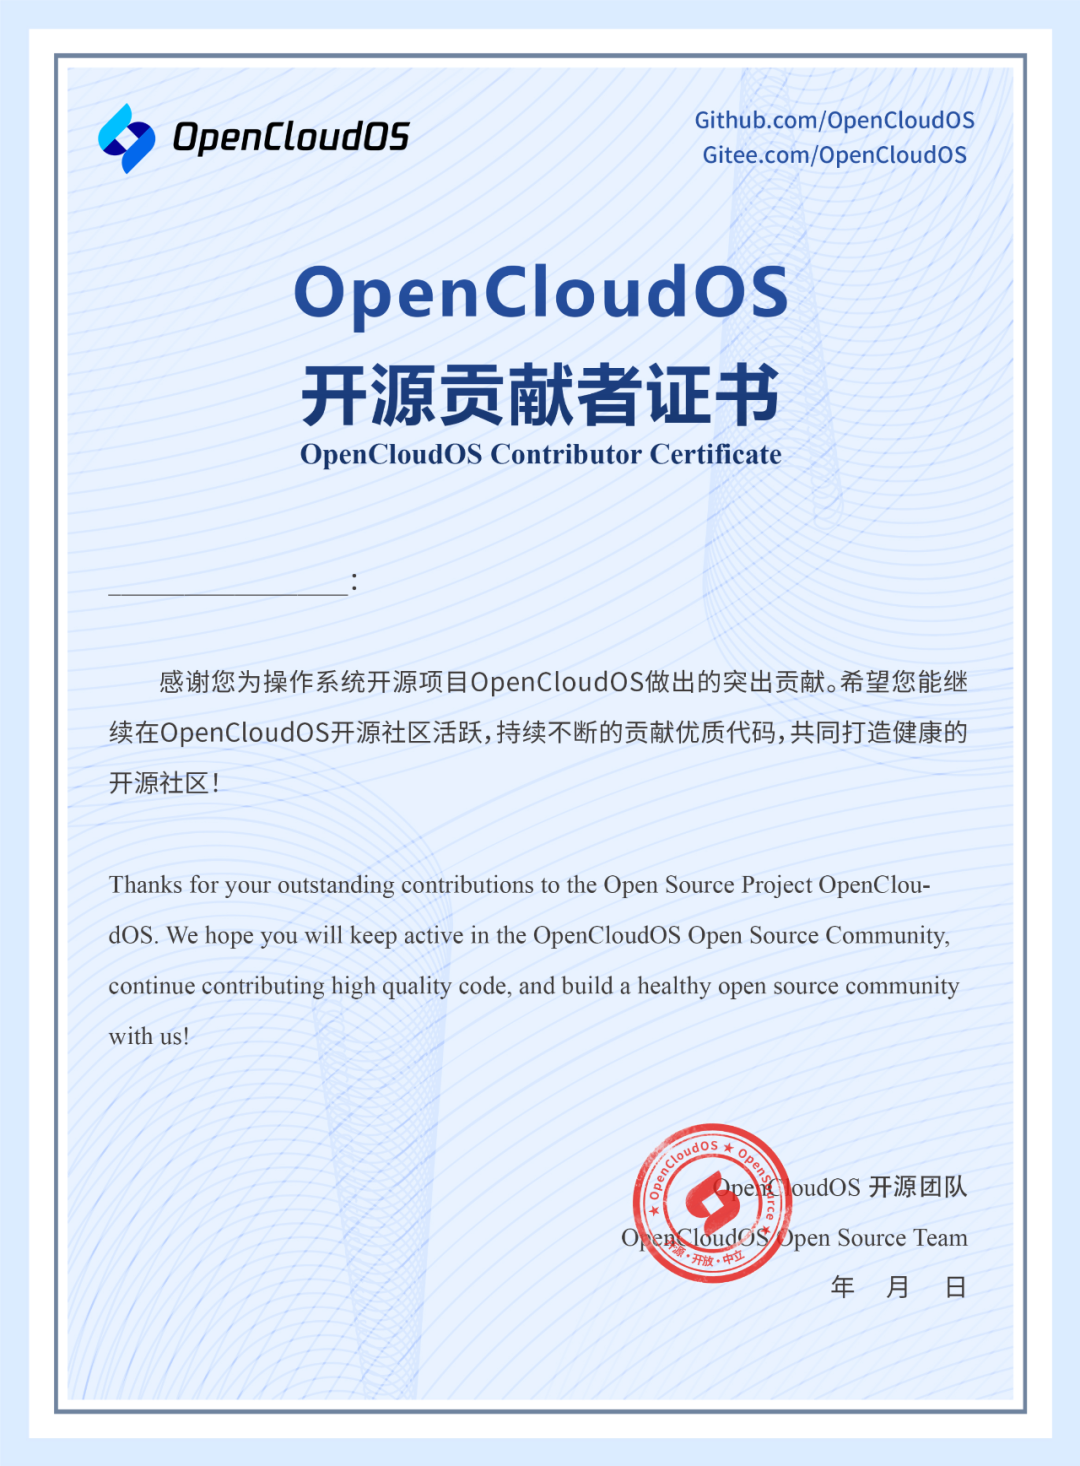 我是学生，想要参与 OpenCloudOS，该怎么做？_开源社区